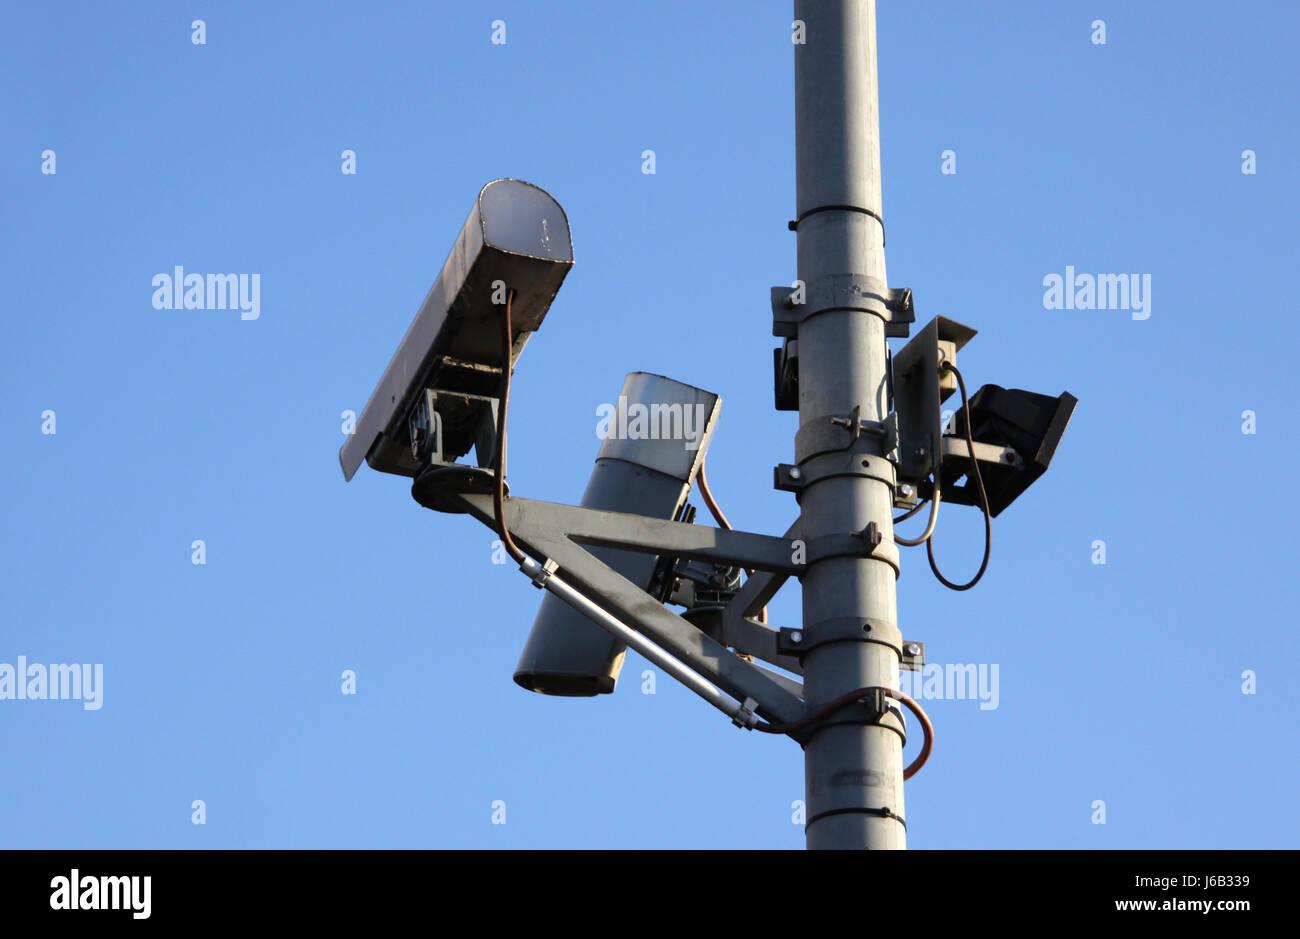 Check Überwachung Videokamera Scheck Überwachung bestimmter speichern Delinquenz gesichert Stockfoto